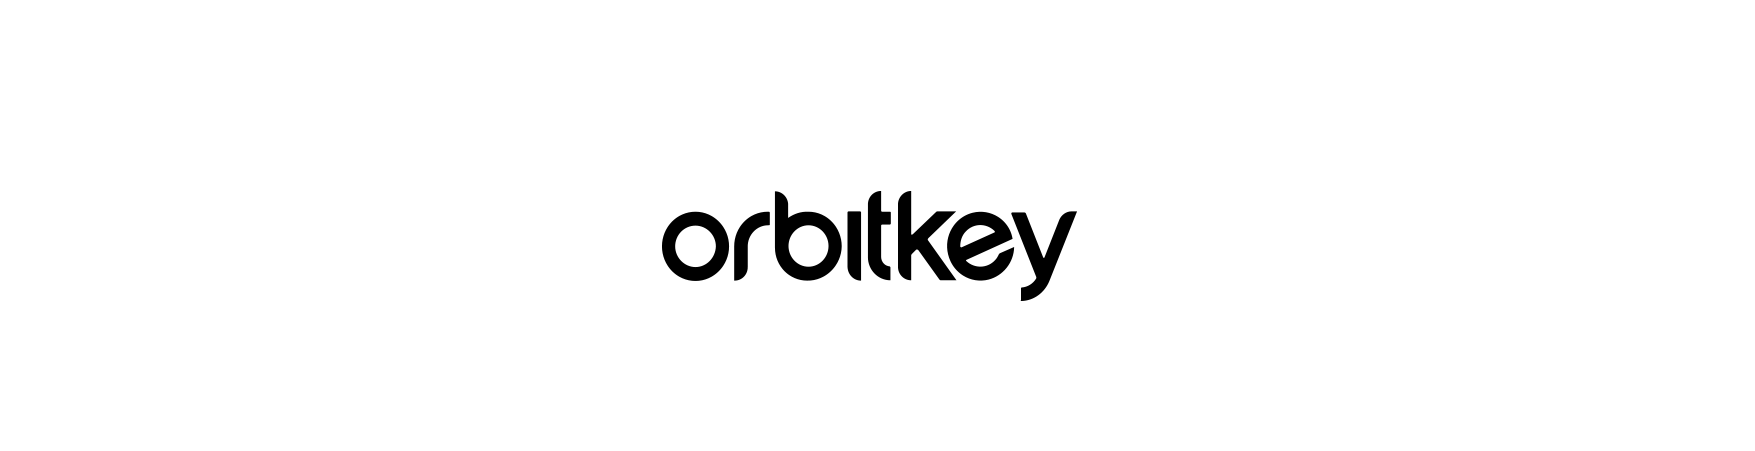 Orbitkey